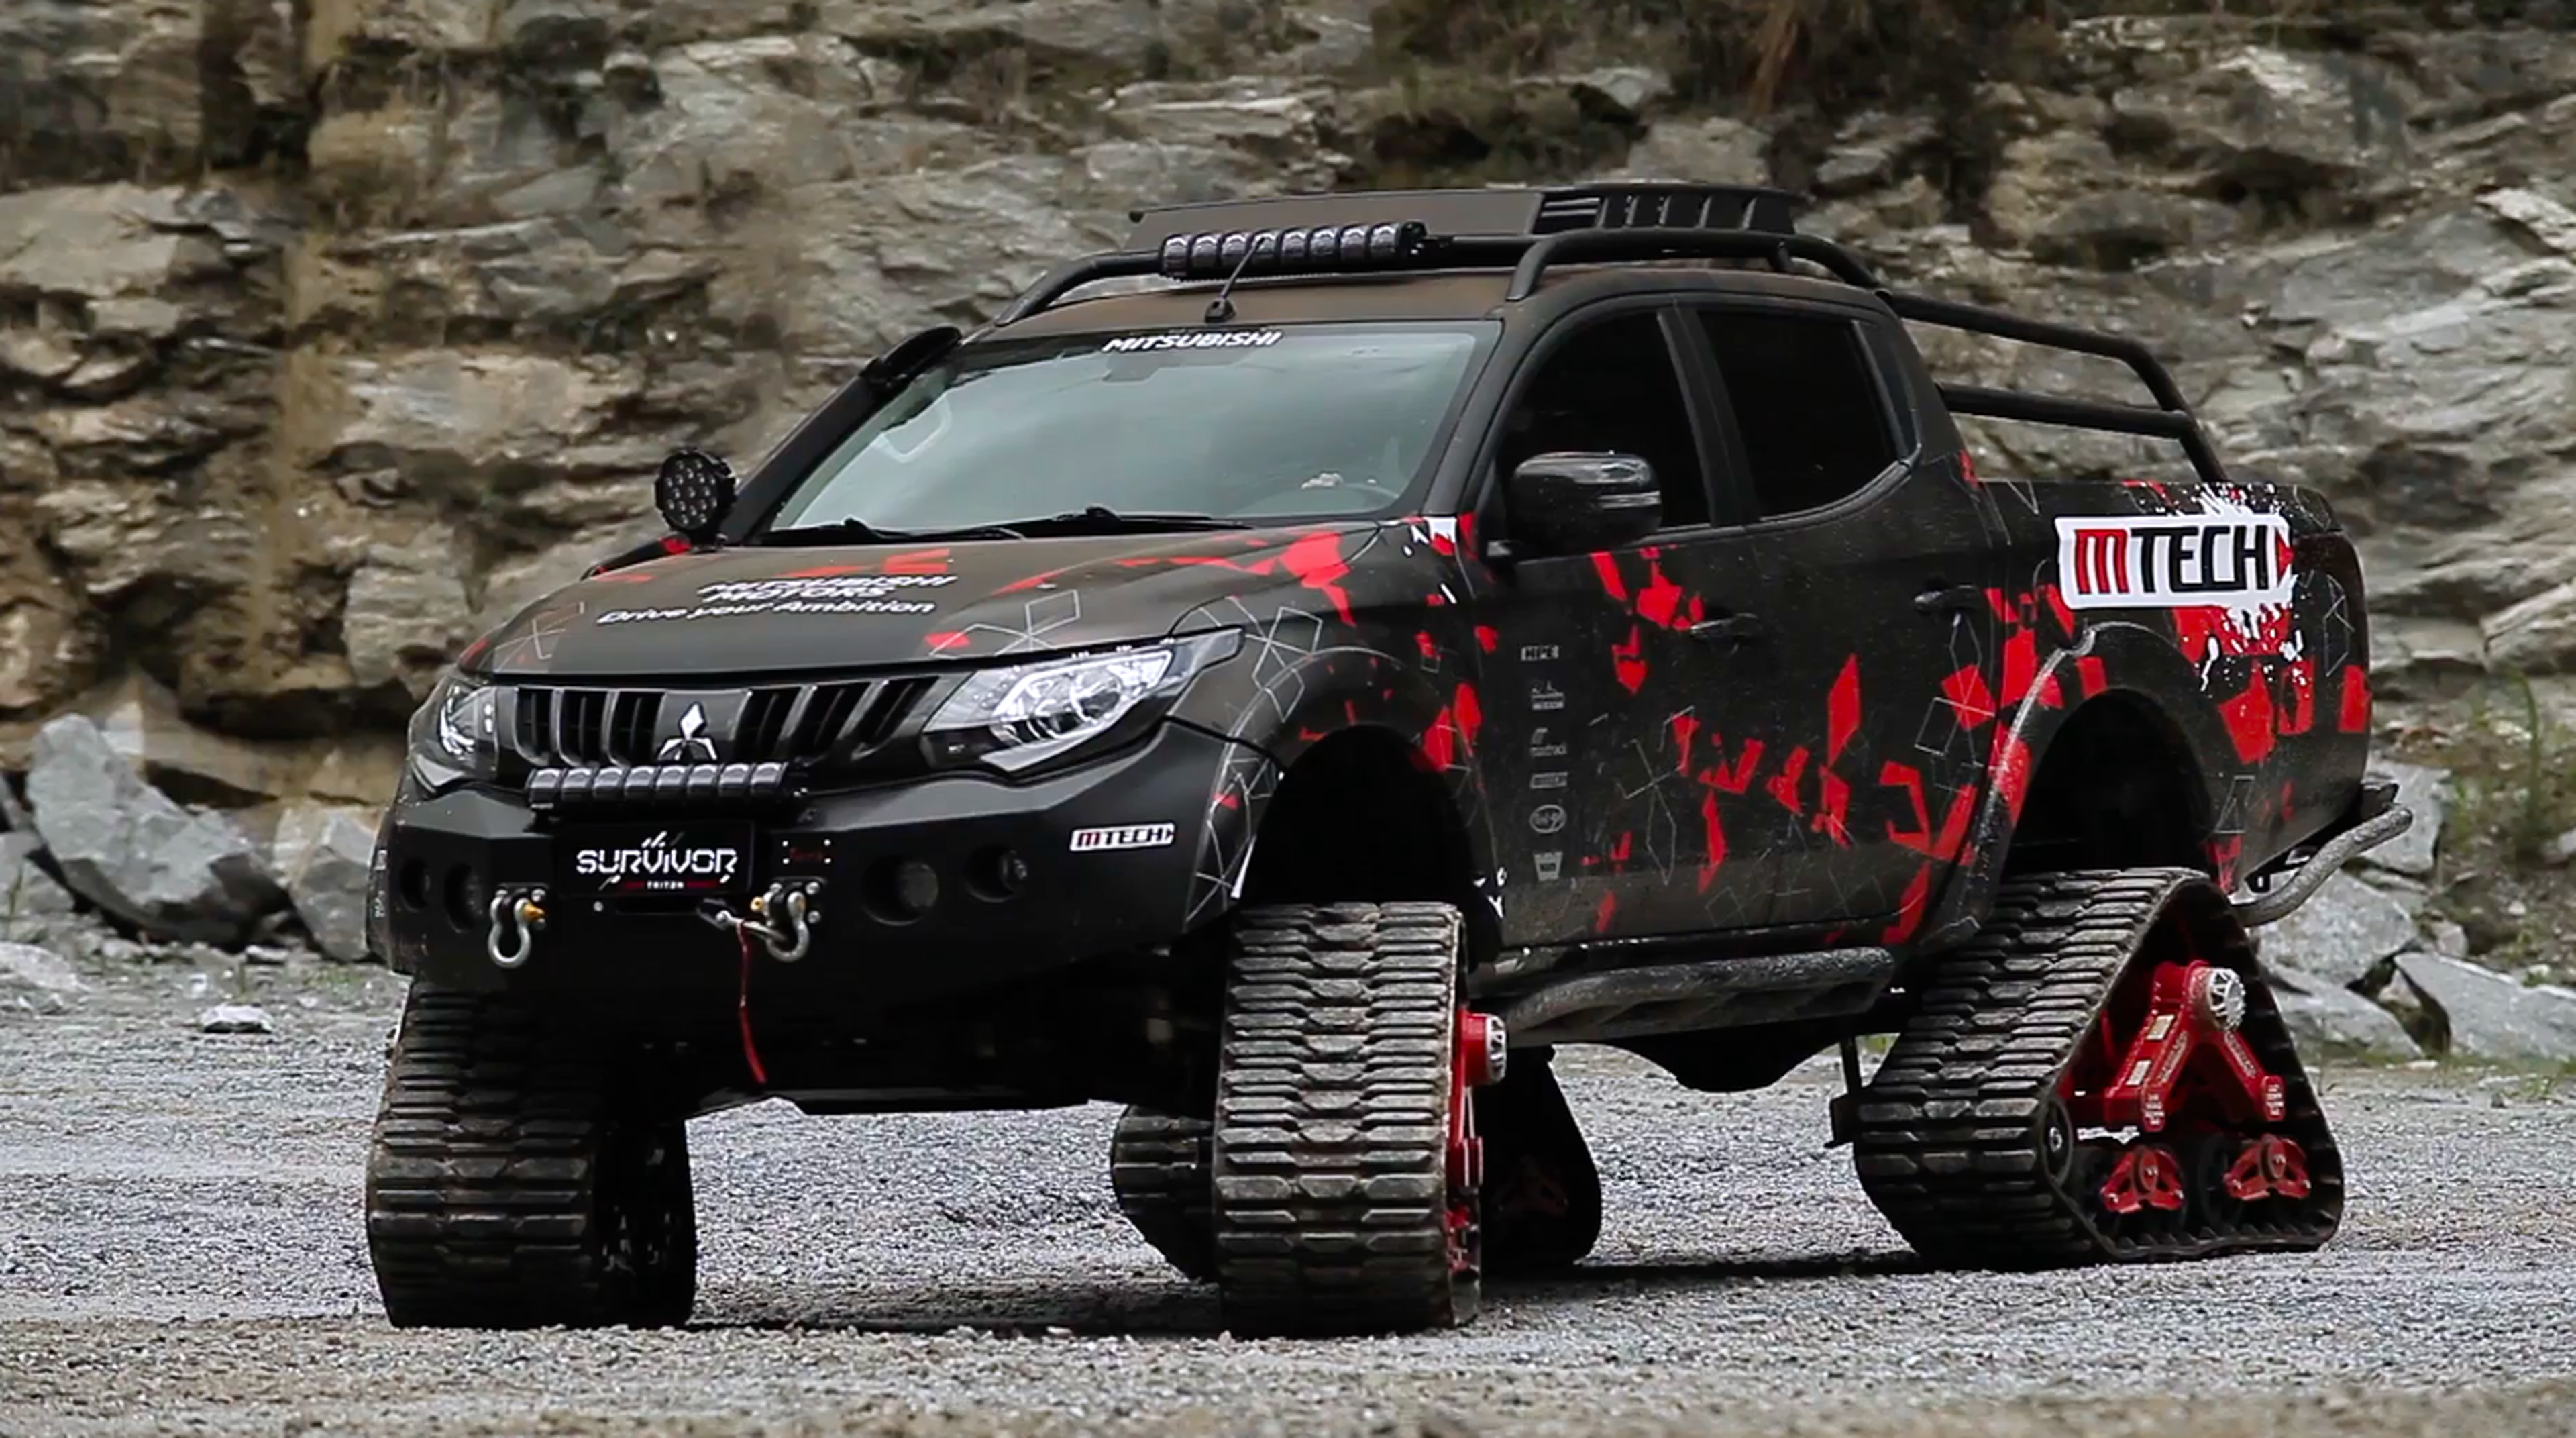 VÍDEO: El Mitsubishi L200 Triton Sport Survivor puede con todo, ¿te atreverías a conducirlo?